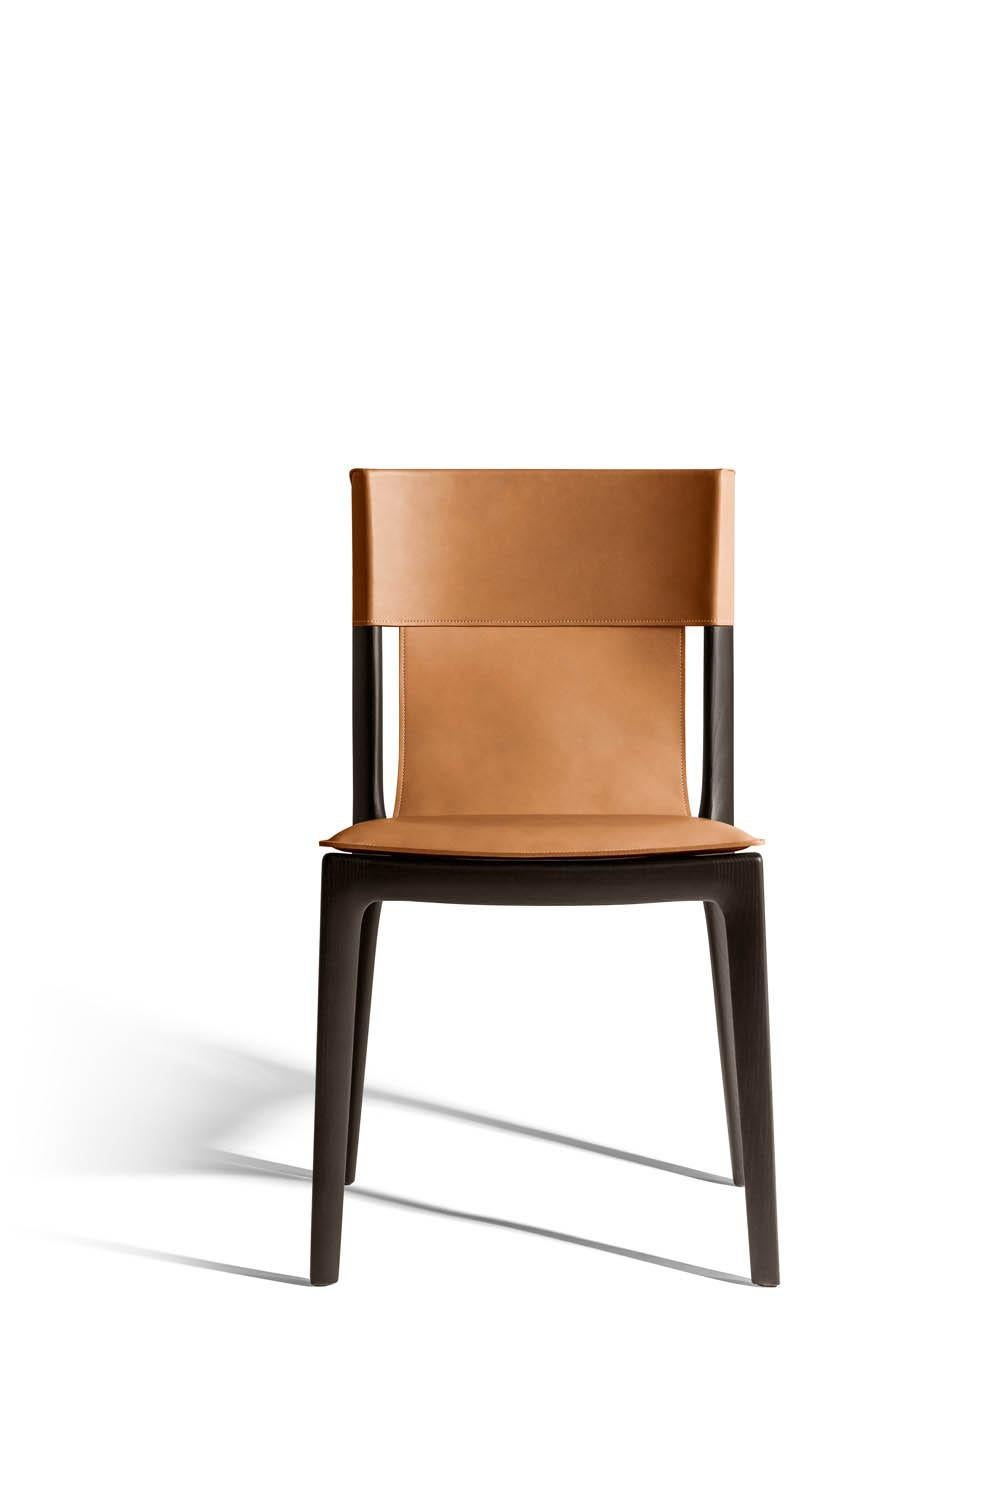 La chaise Isadora s'inspire de la grâce d'Isadora Duncan, pionnière de la danse contemporaine. Créé par Roberto Lazzeroni, son design original est façonné par la combinaison sans faille du bois et du cuir de selle. La chaise Isadora a une structure